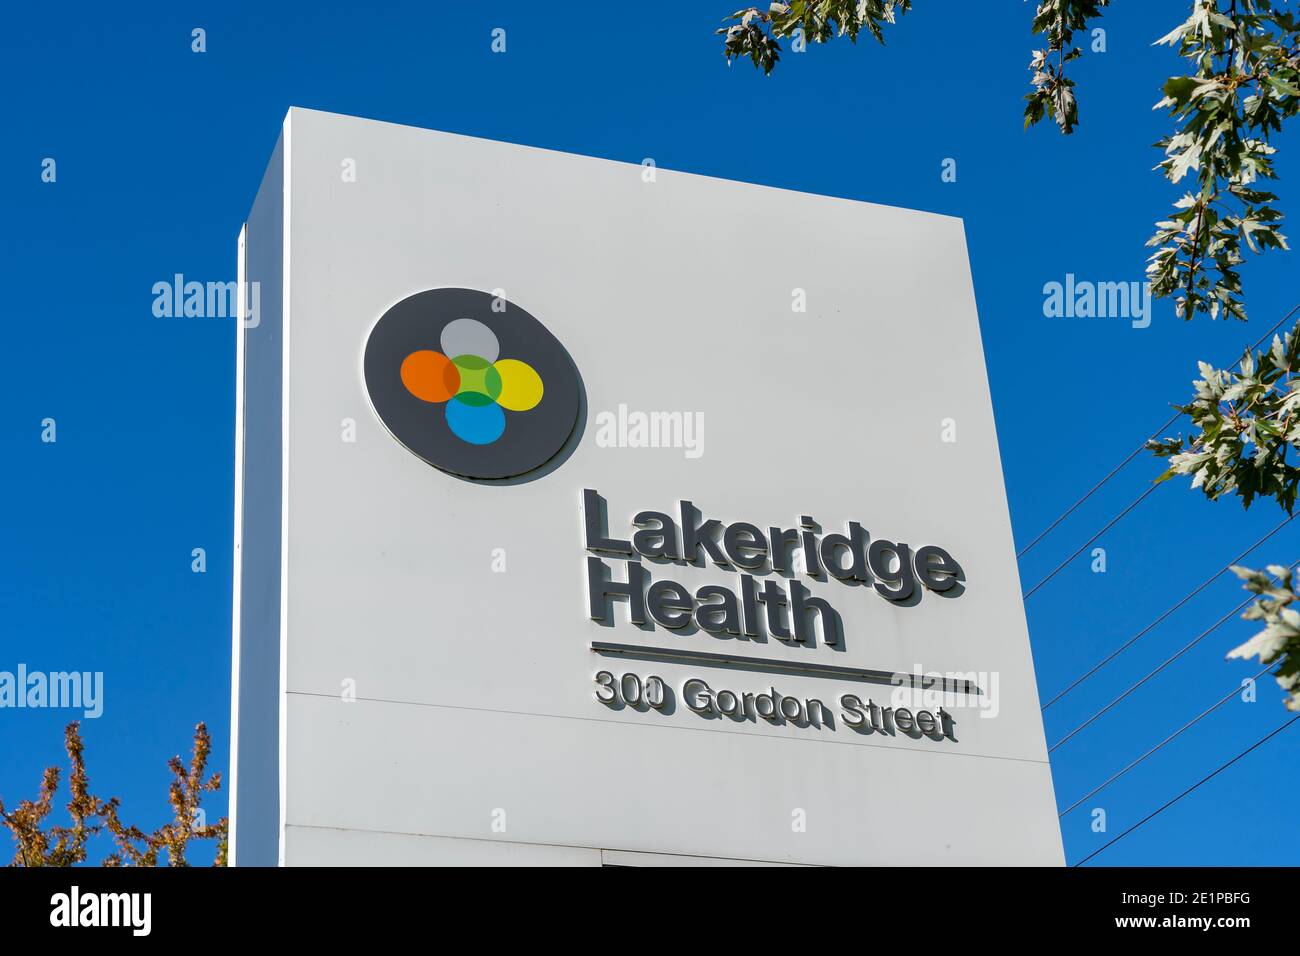 Le signe de santé de Lakeridge est montré dans Whitby, Ontario, Canada Banque D'Images